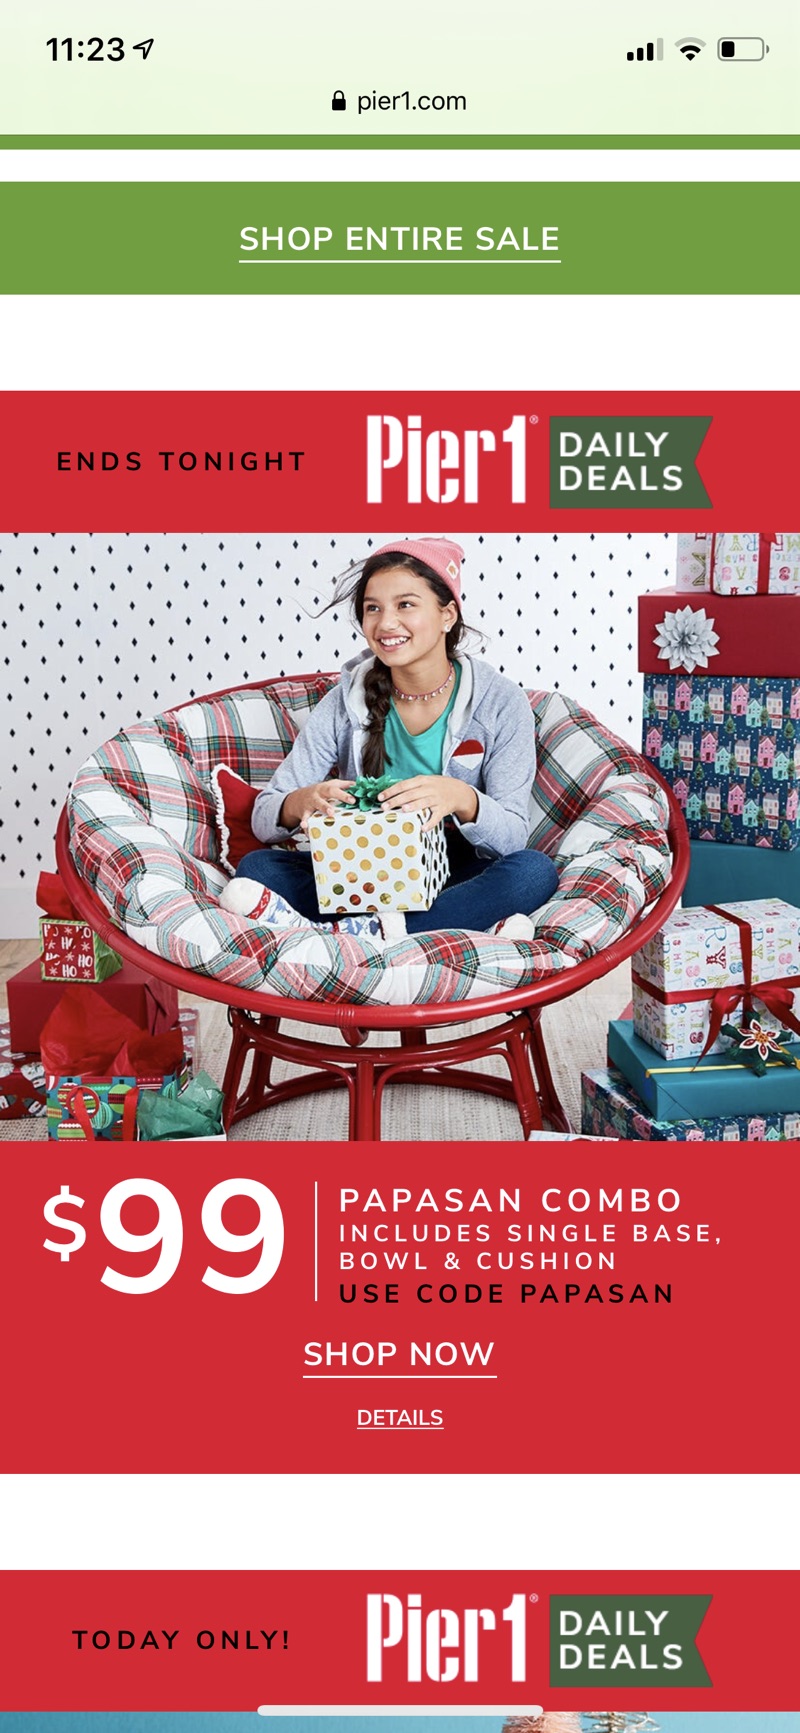 Papasan Chair Frame with Cushion | Pier 1
藤椅特价$99（包括座椅基座和坐垫）